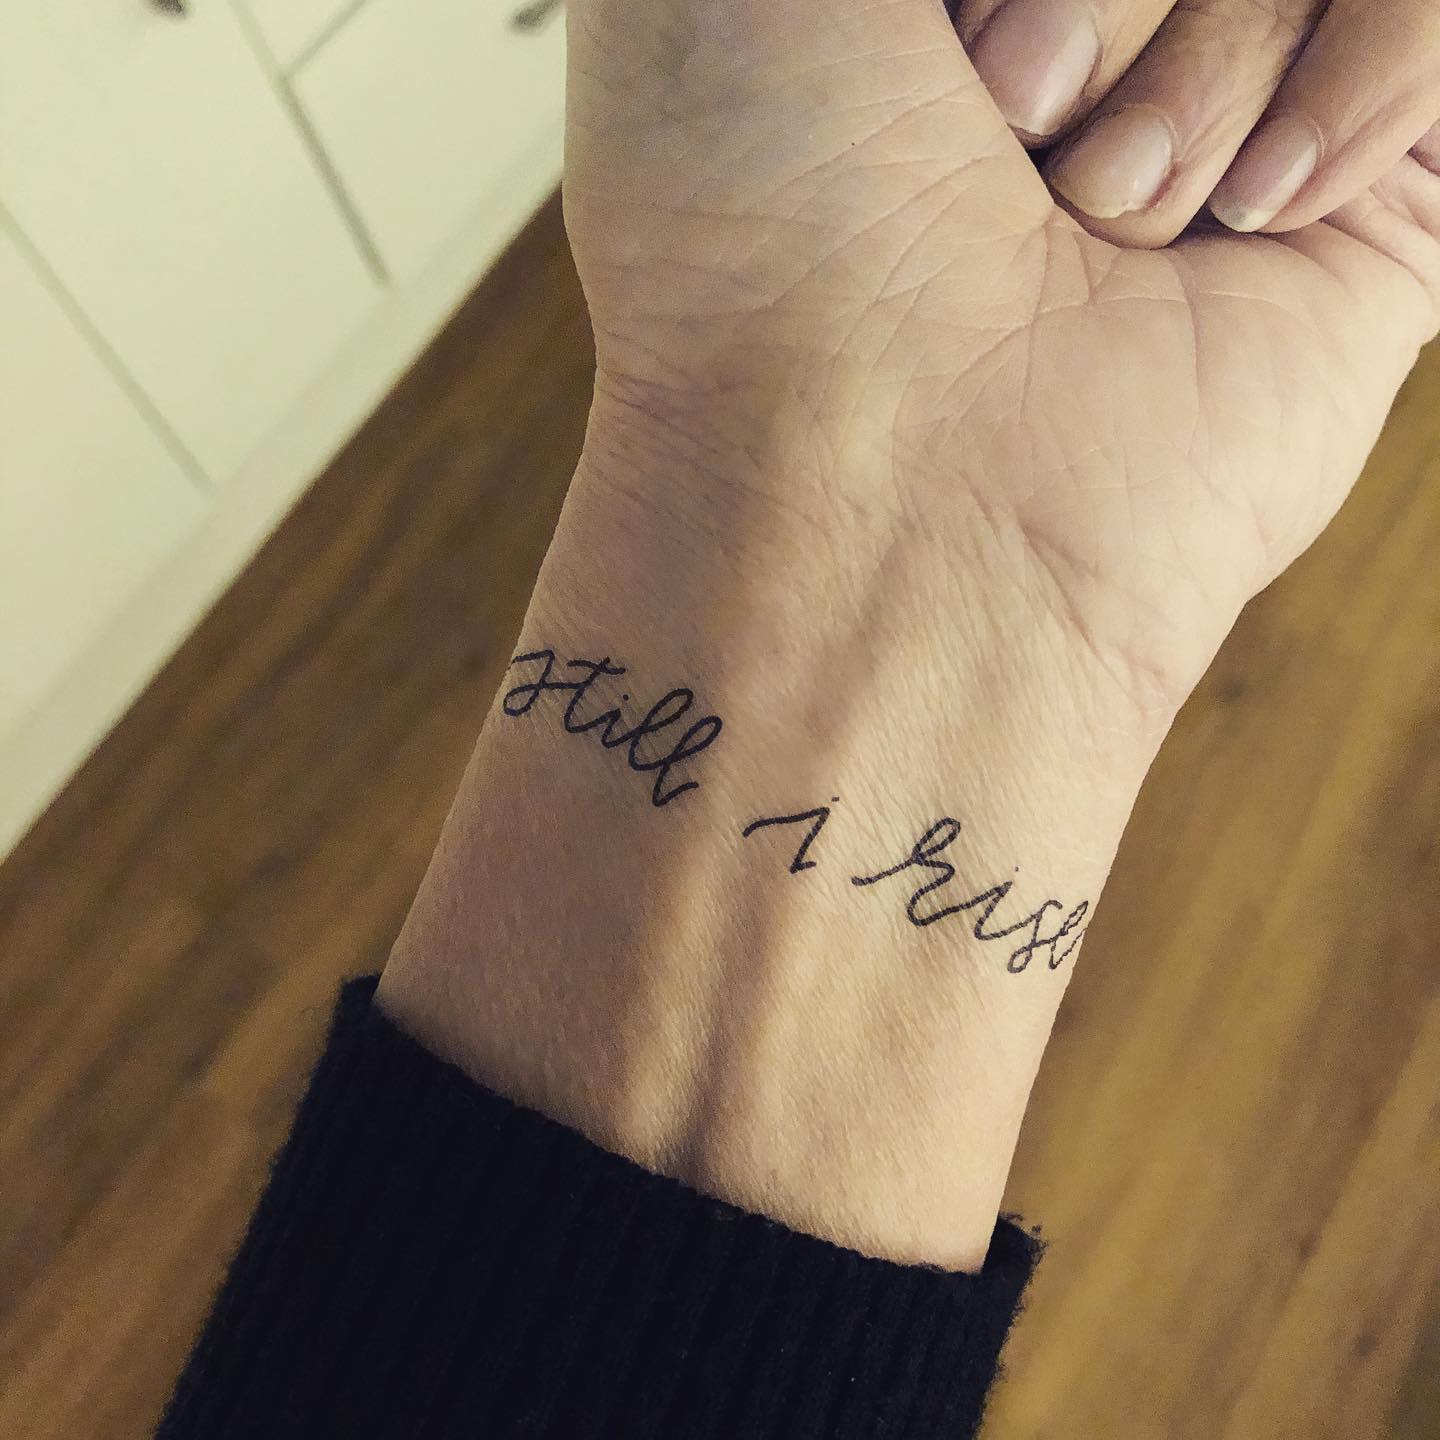 Wrist Still I Rise Tattoo -lousnewu